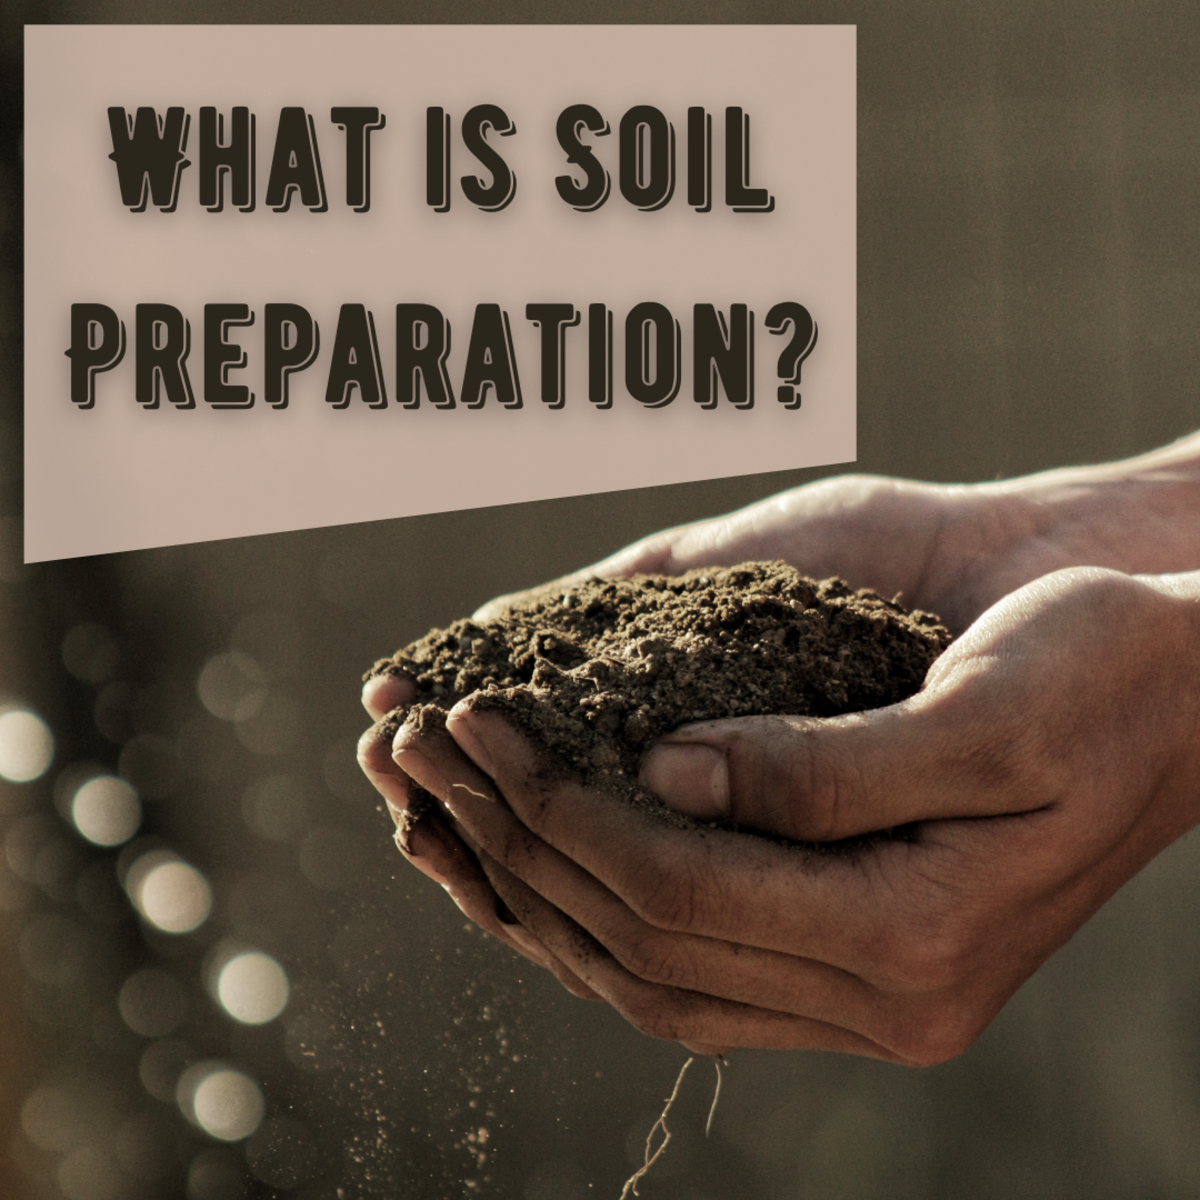 How to Prepare Garden Soil for Planting